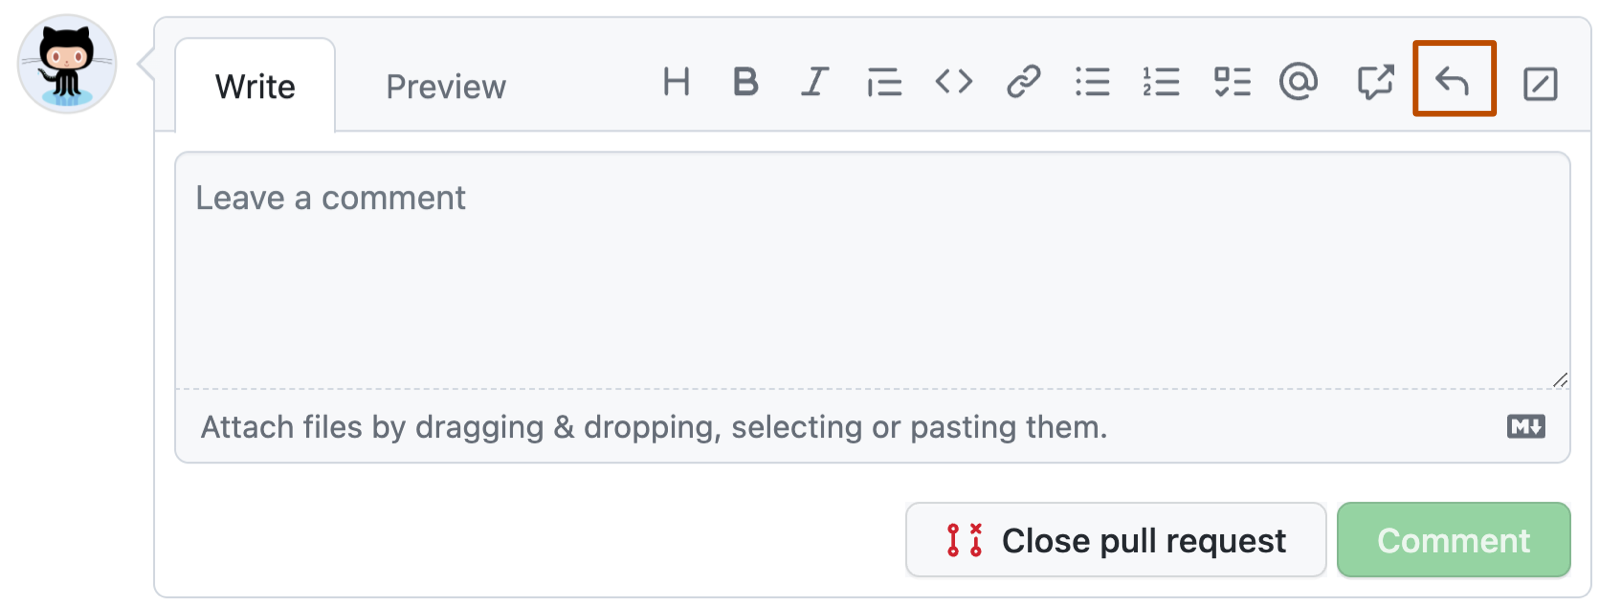 GitHub 注释框的屏幕截图。 在工具栏上，带有向左弯曲箭头的回复按钮用深橙色框出。